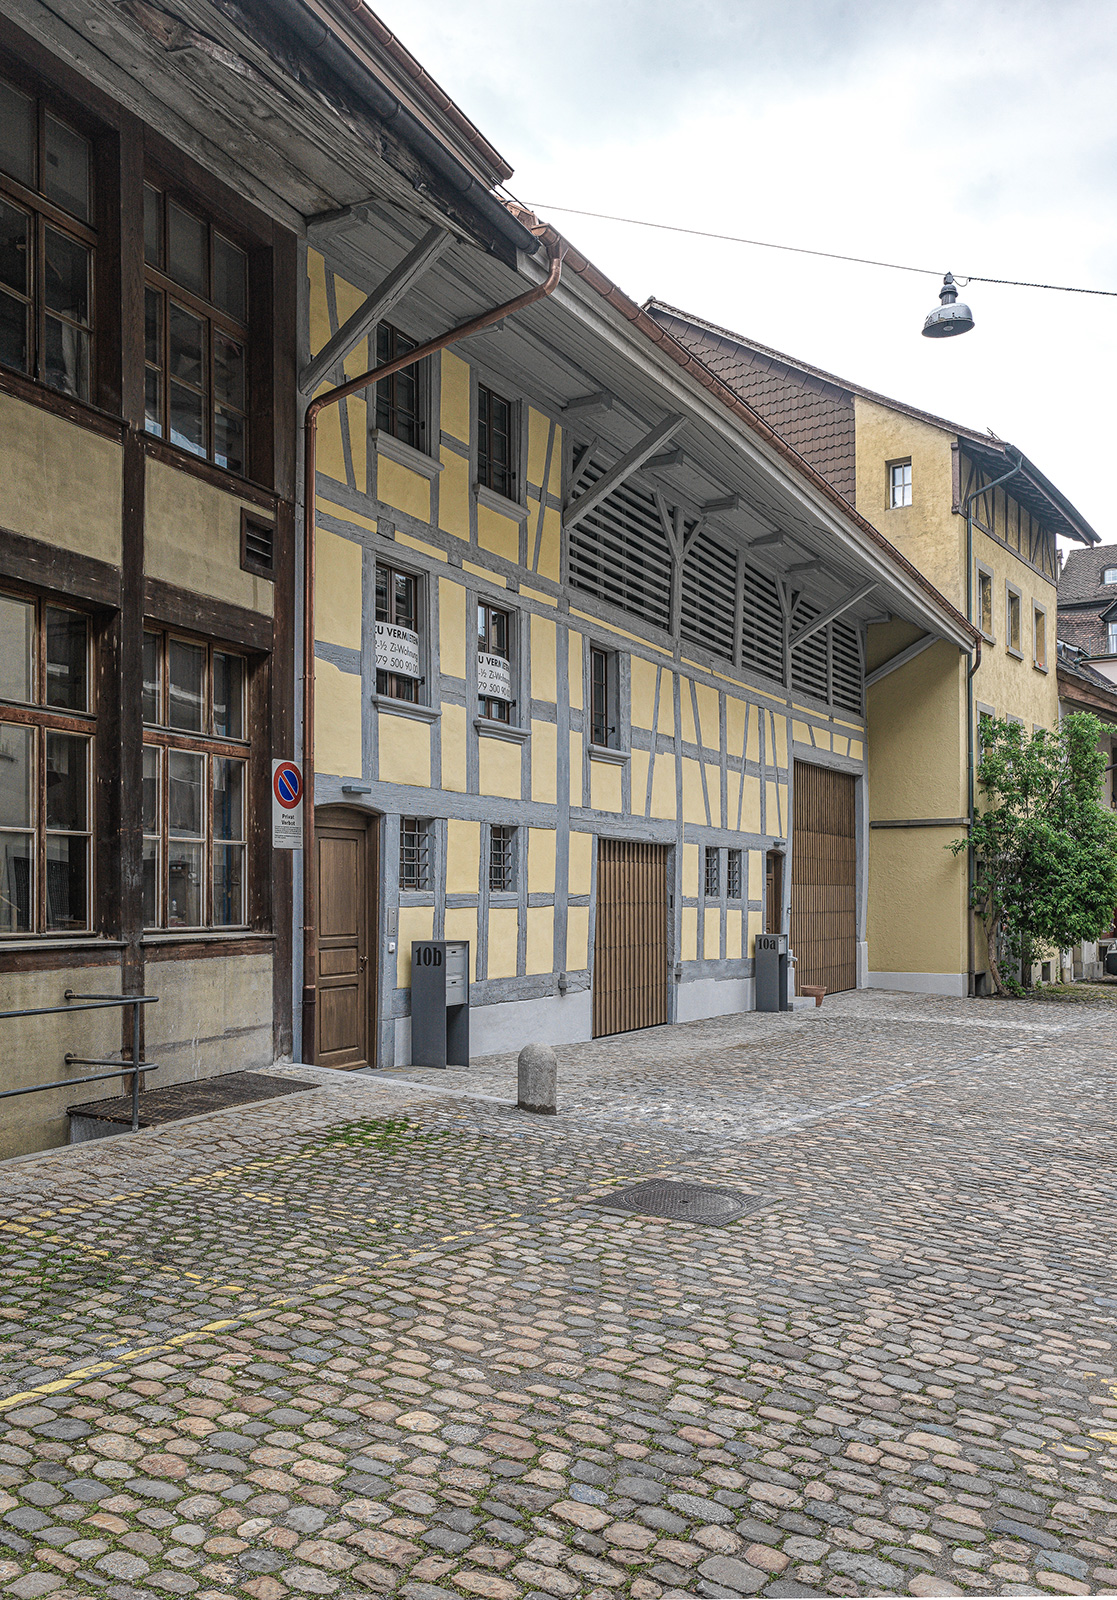 1808 Altstadthaus Obere Promenade